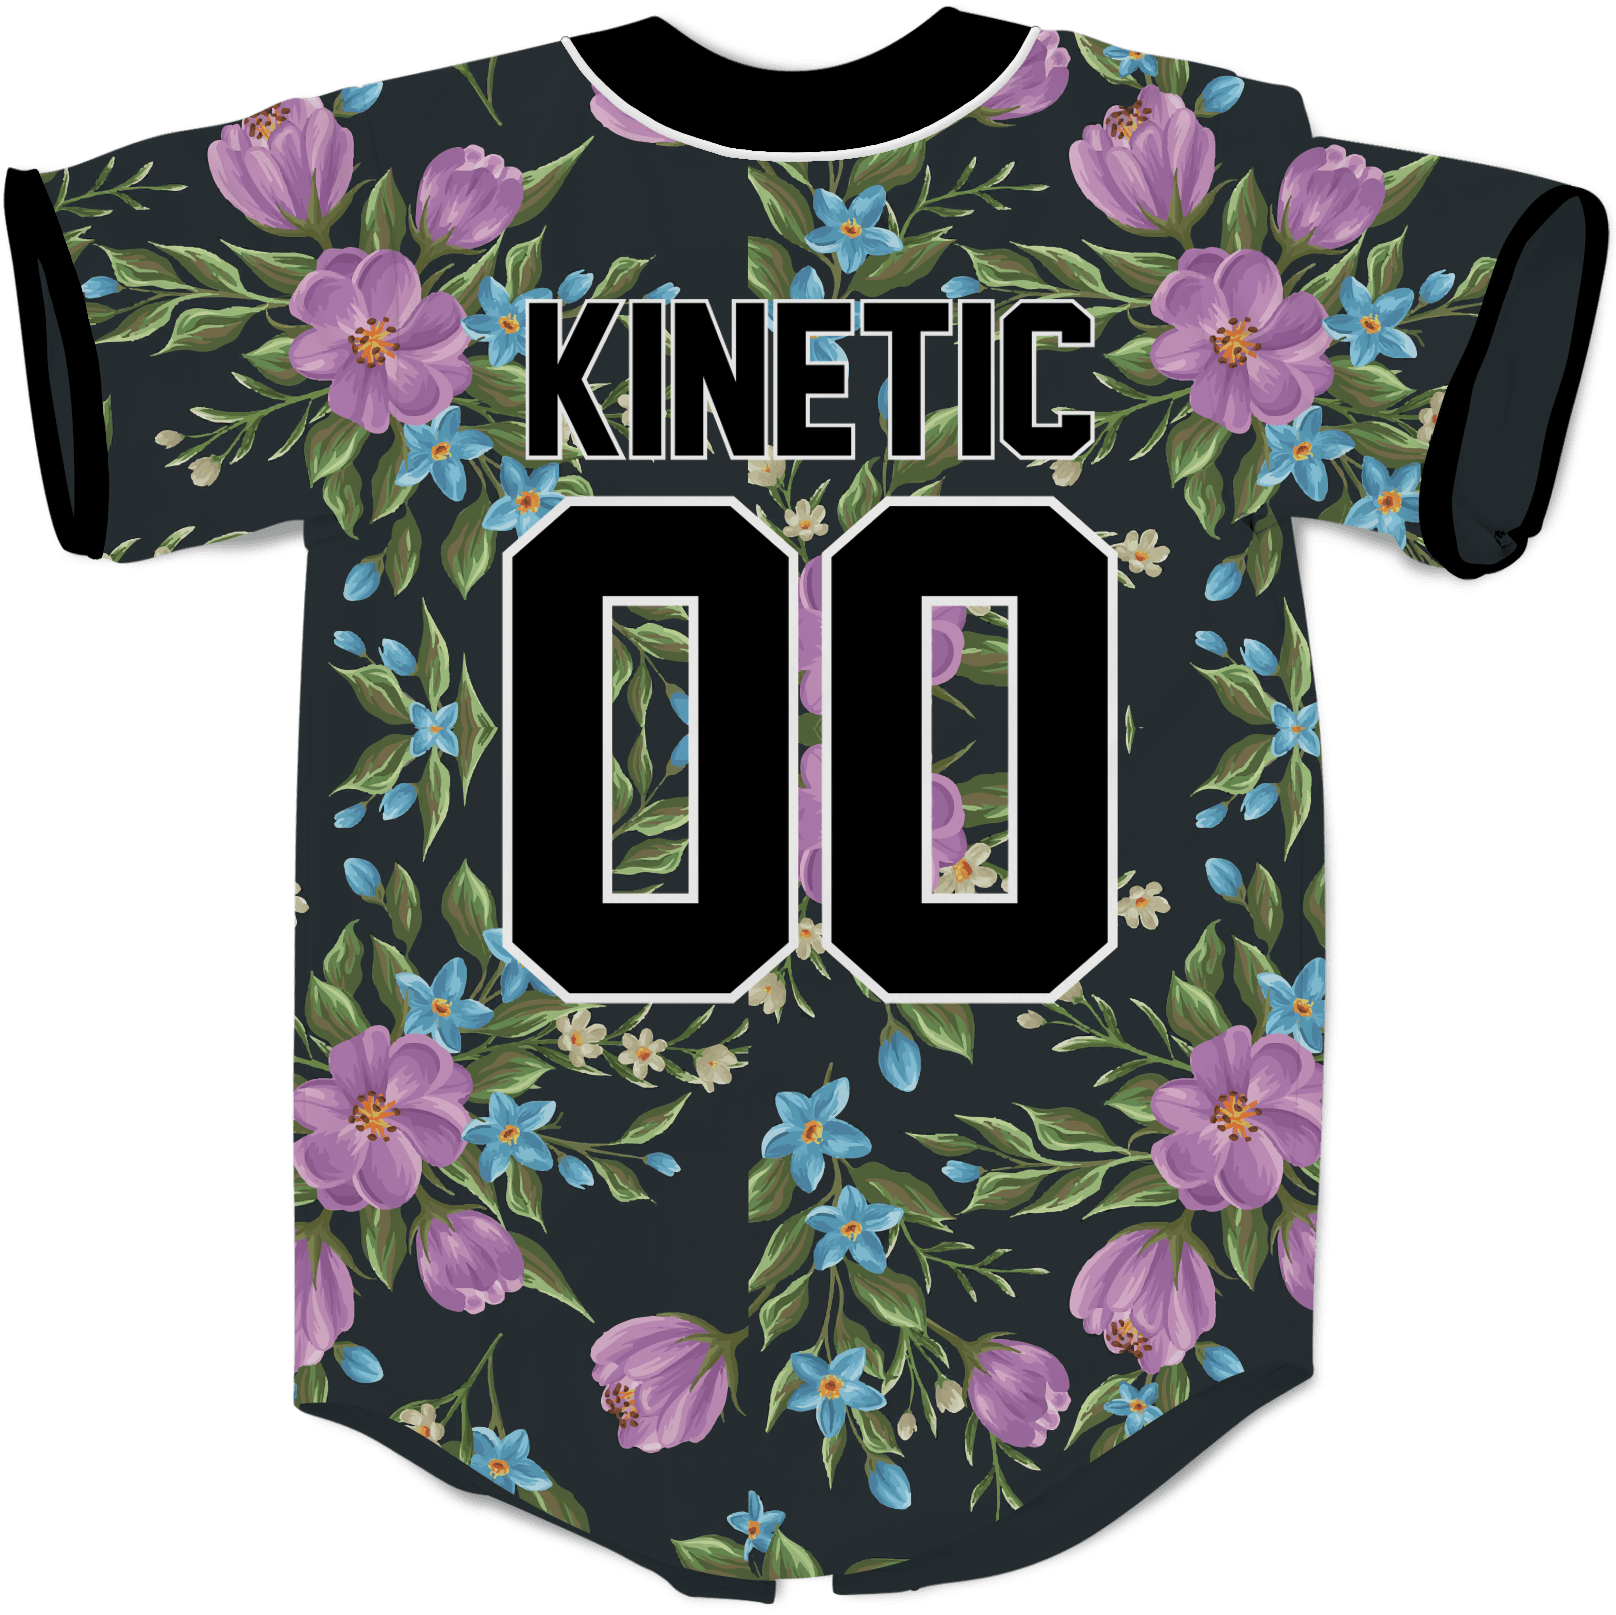 Acacia - Midnight Bloom Baseball Jersey - Kinetic Society